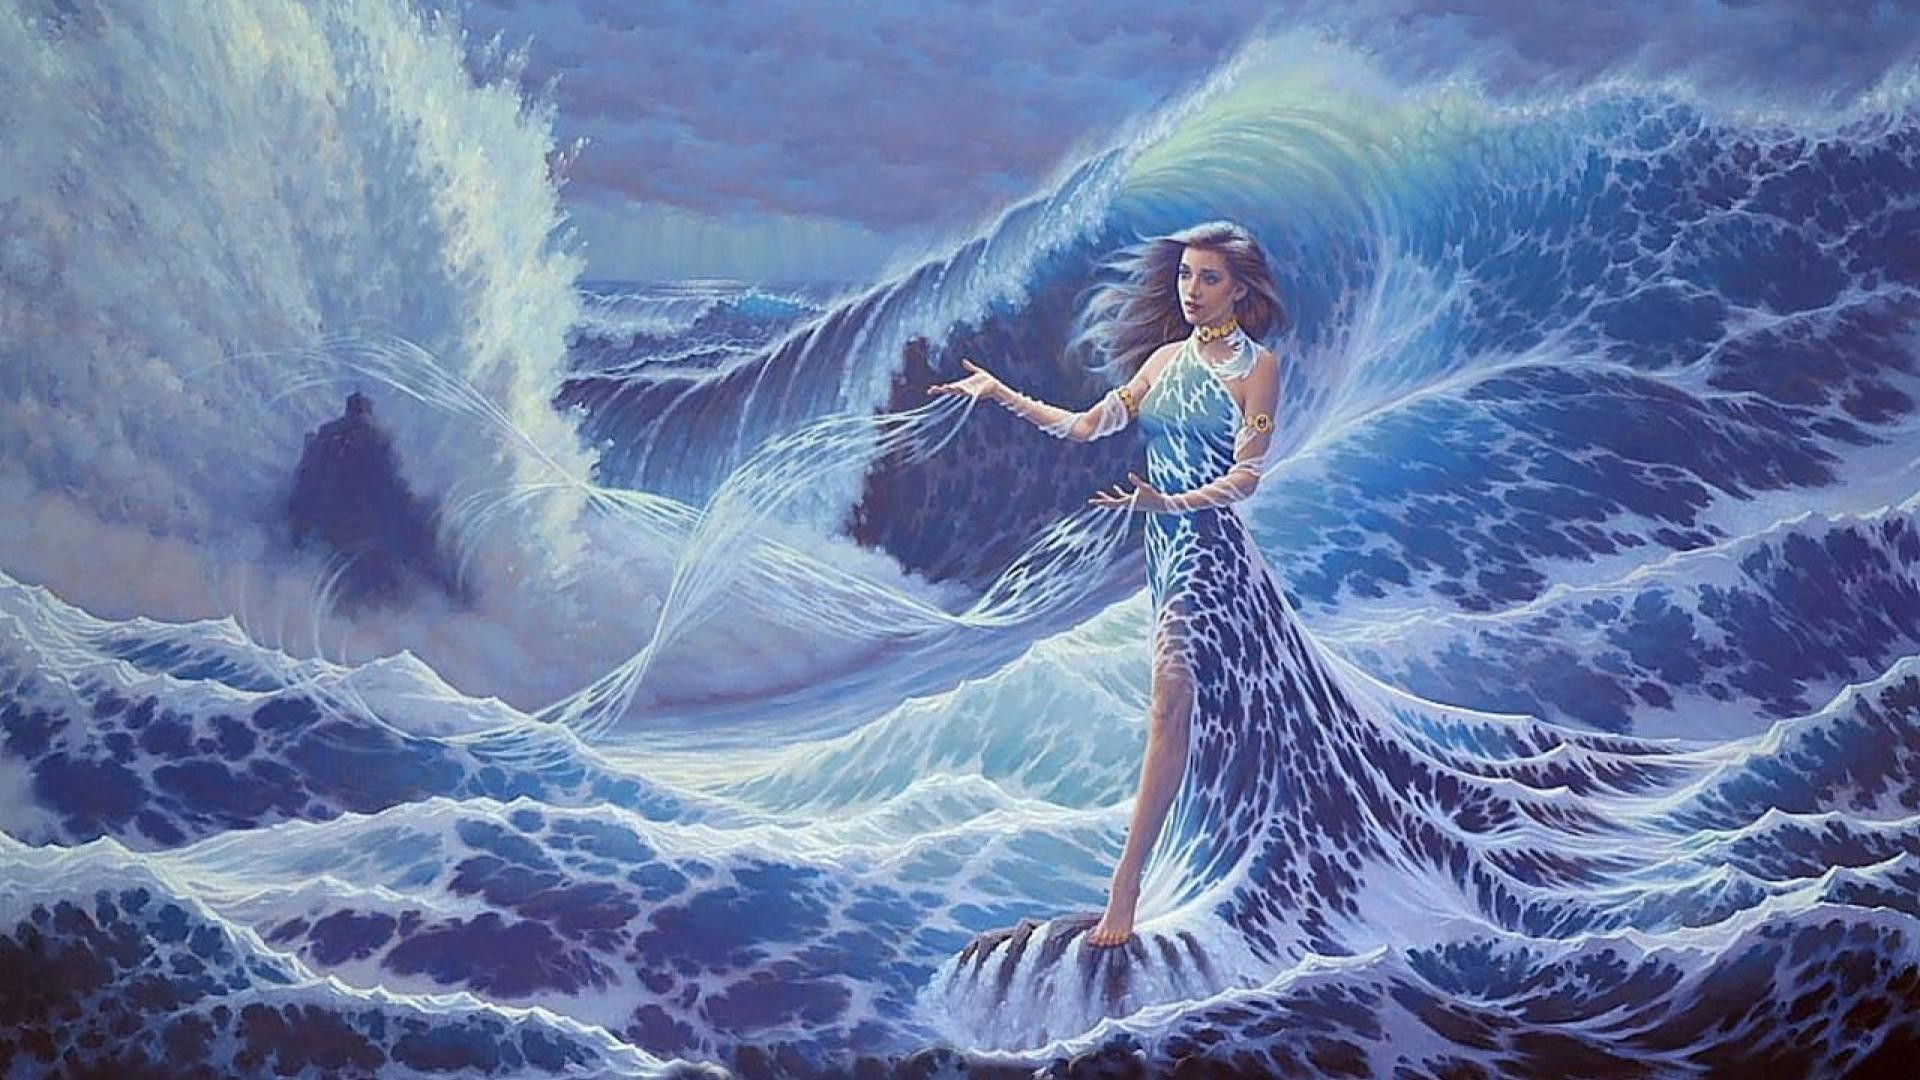 The mermaid of atlantis by person - Mermaid